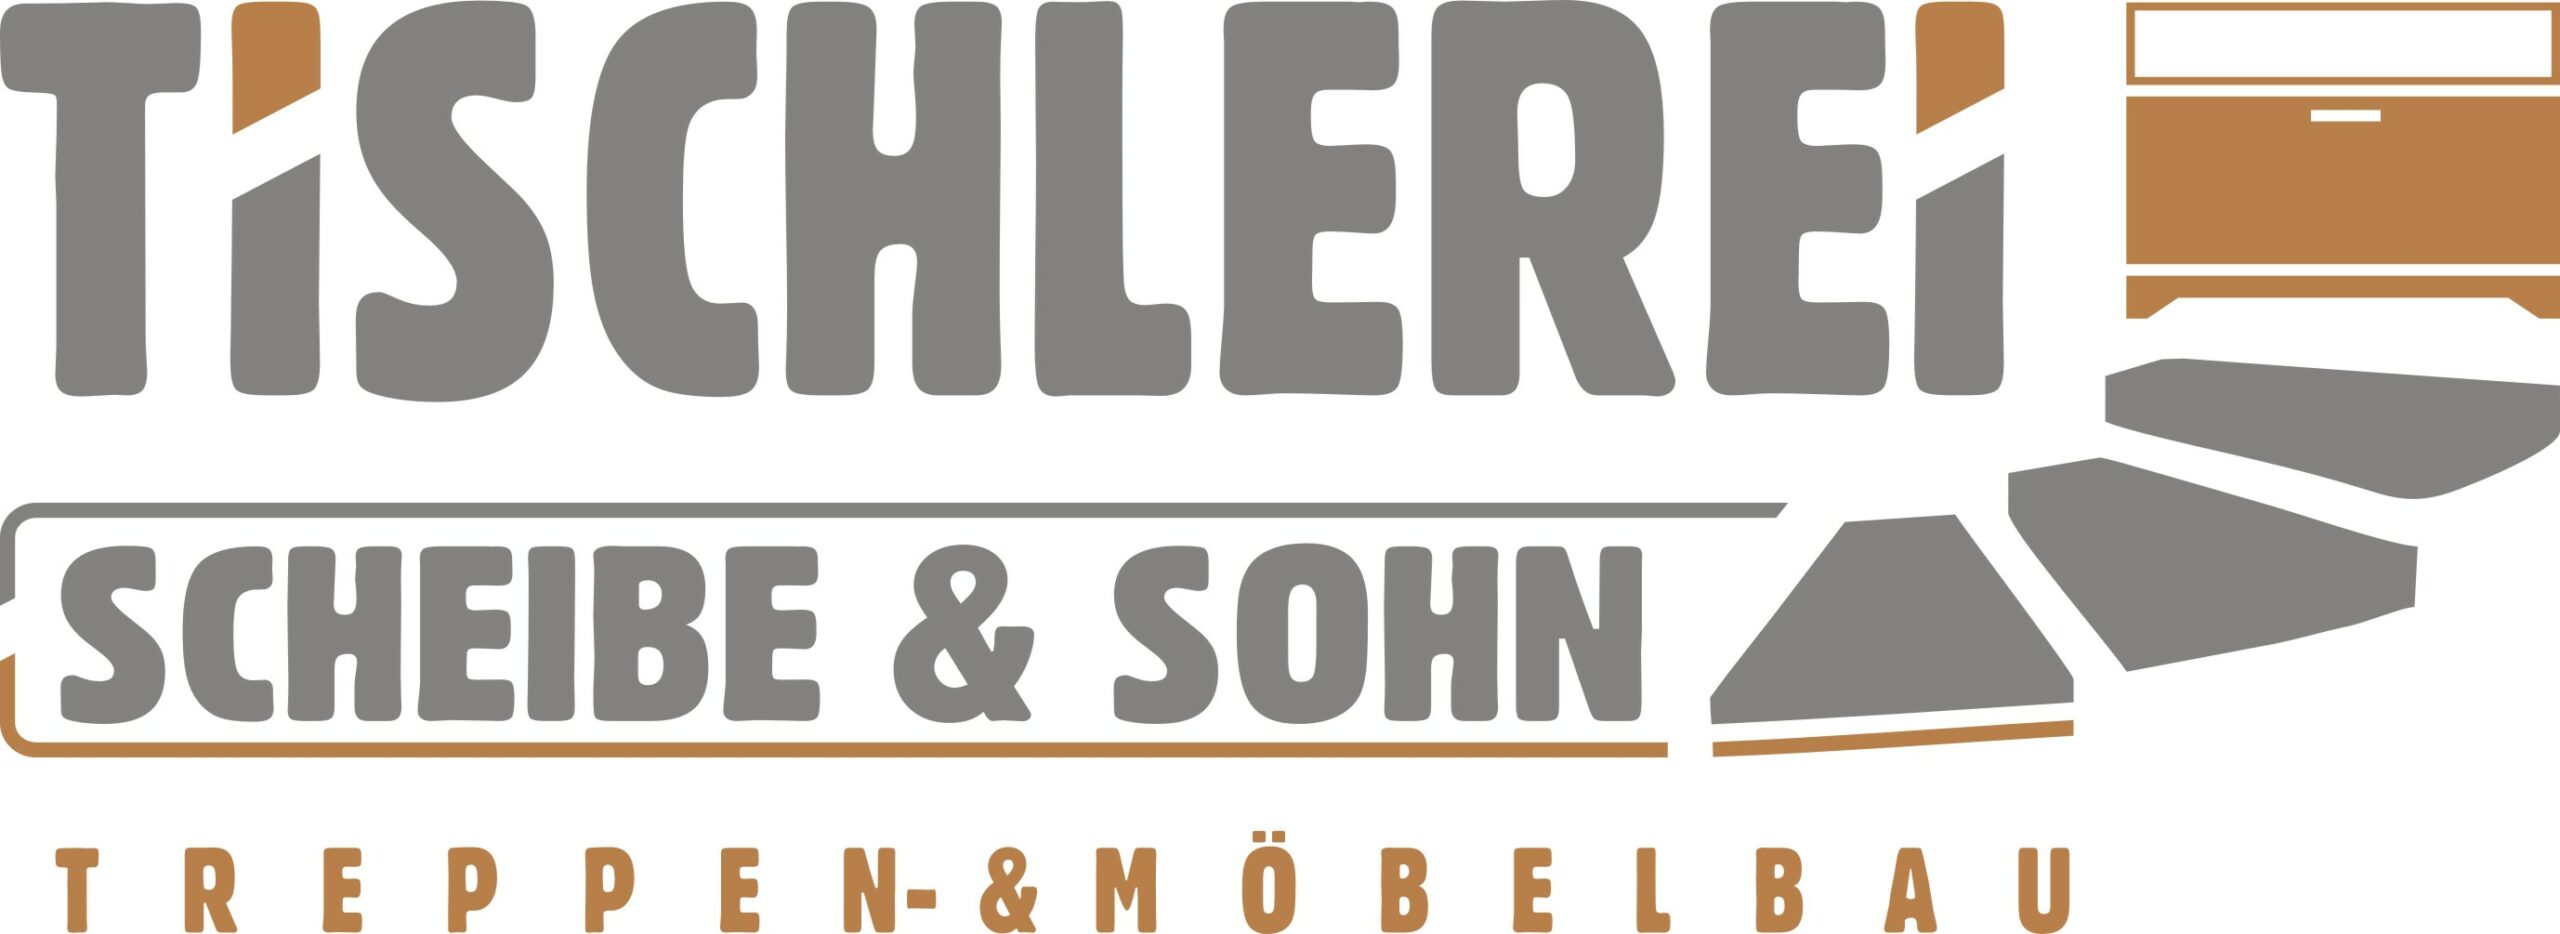 Logo Tischlerei Scheibe & Sohn